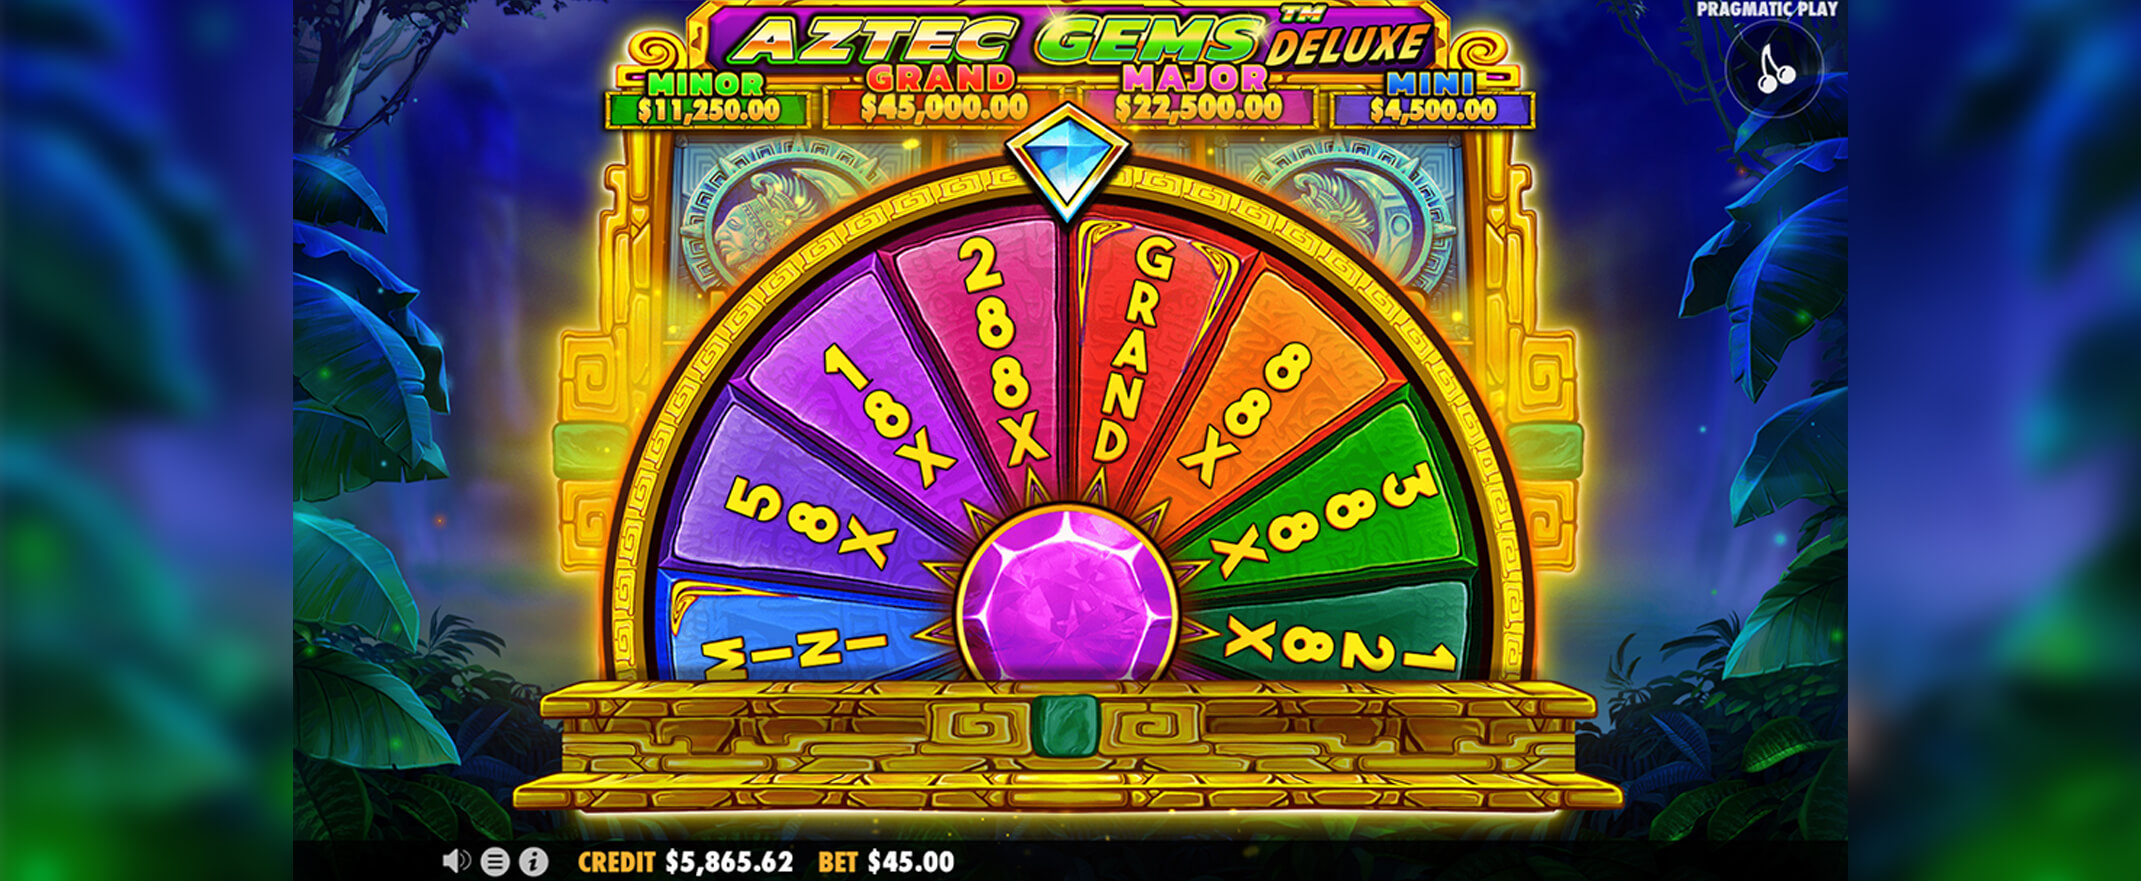 Aztec Gems Deluxe slot screenshot